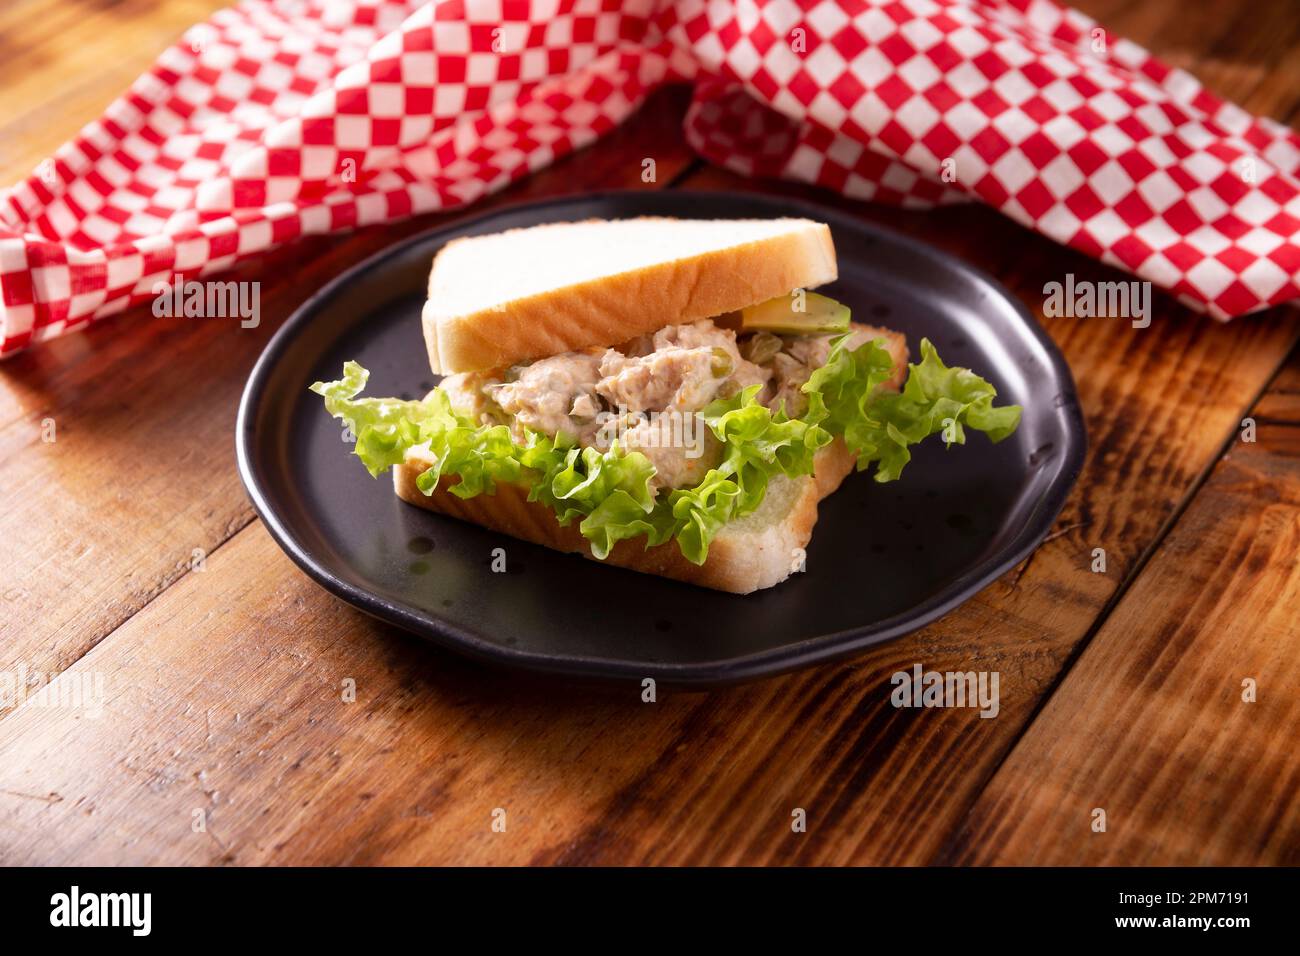 Sandwich à la salade de thon. C'est une recette rapide, simple et nutritive, aliments sains, délicieux en-cas très populaire dans de nombreux pays. Banque D'Images